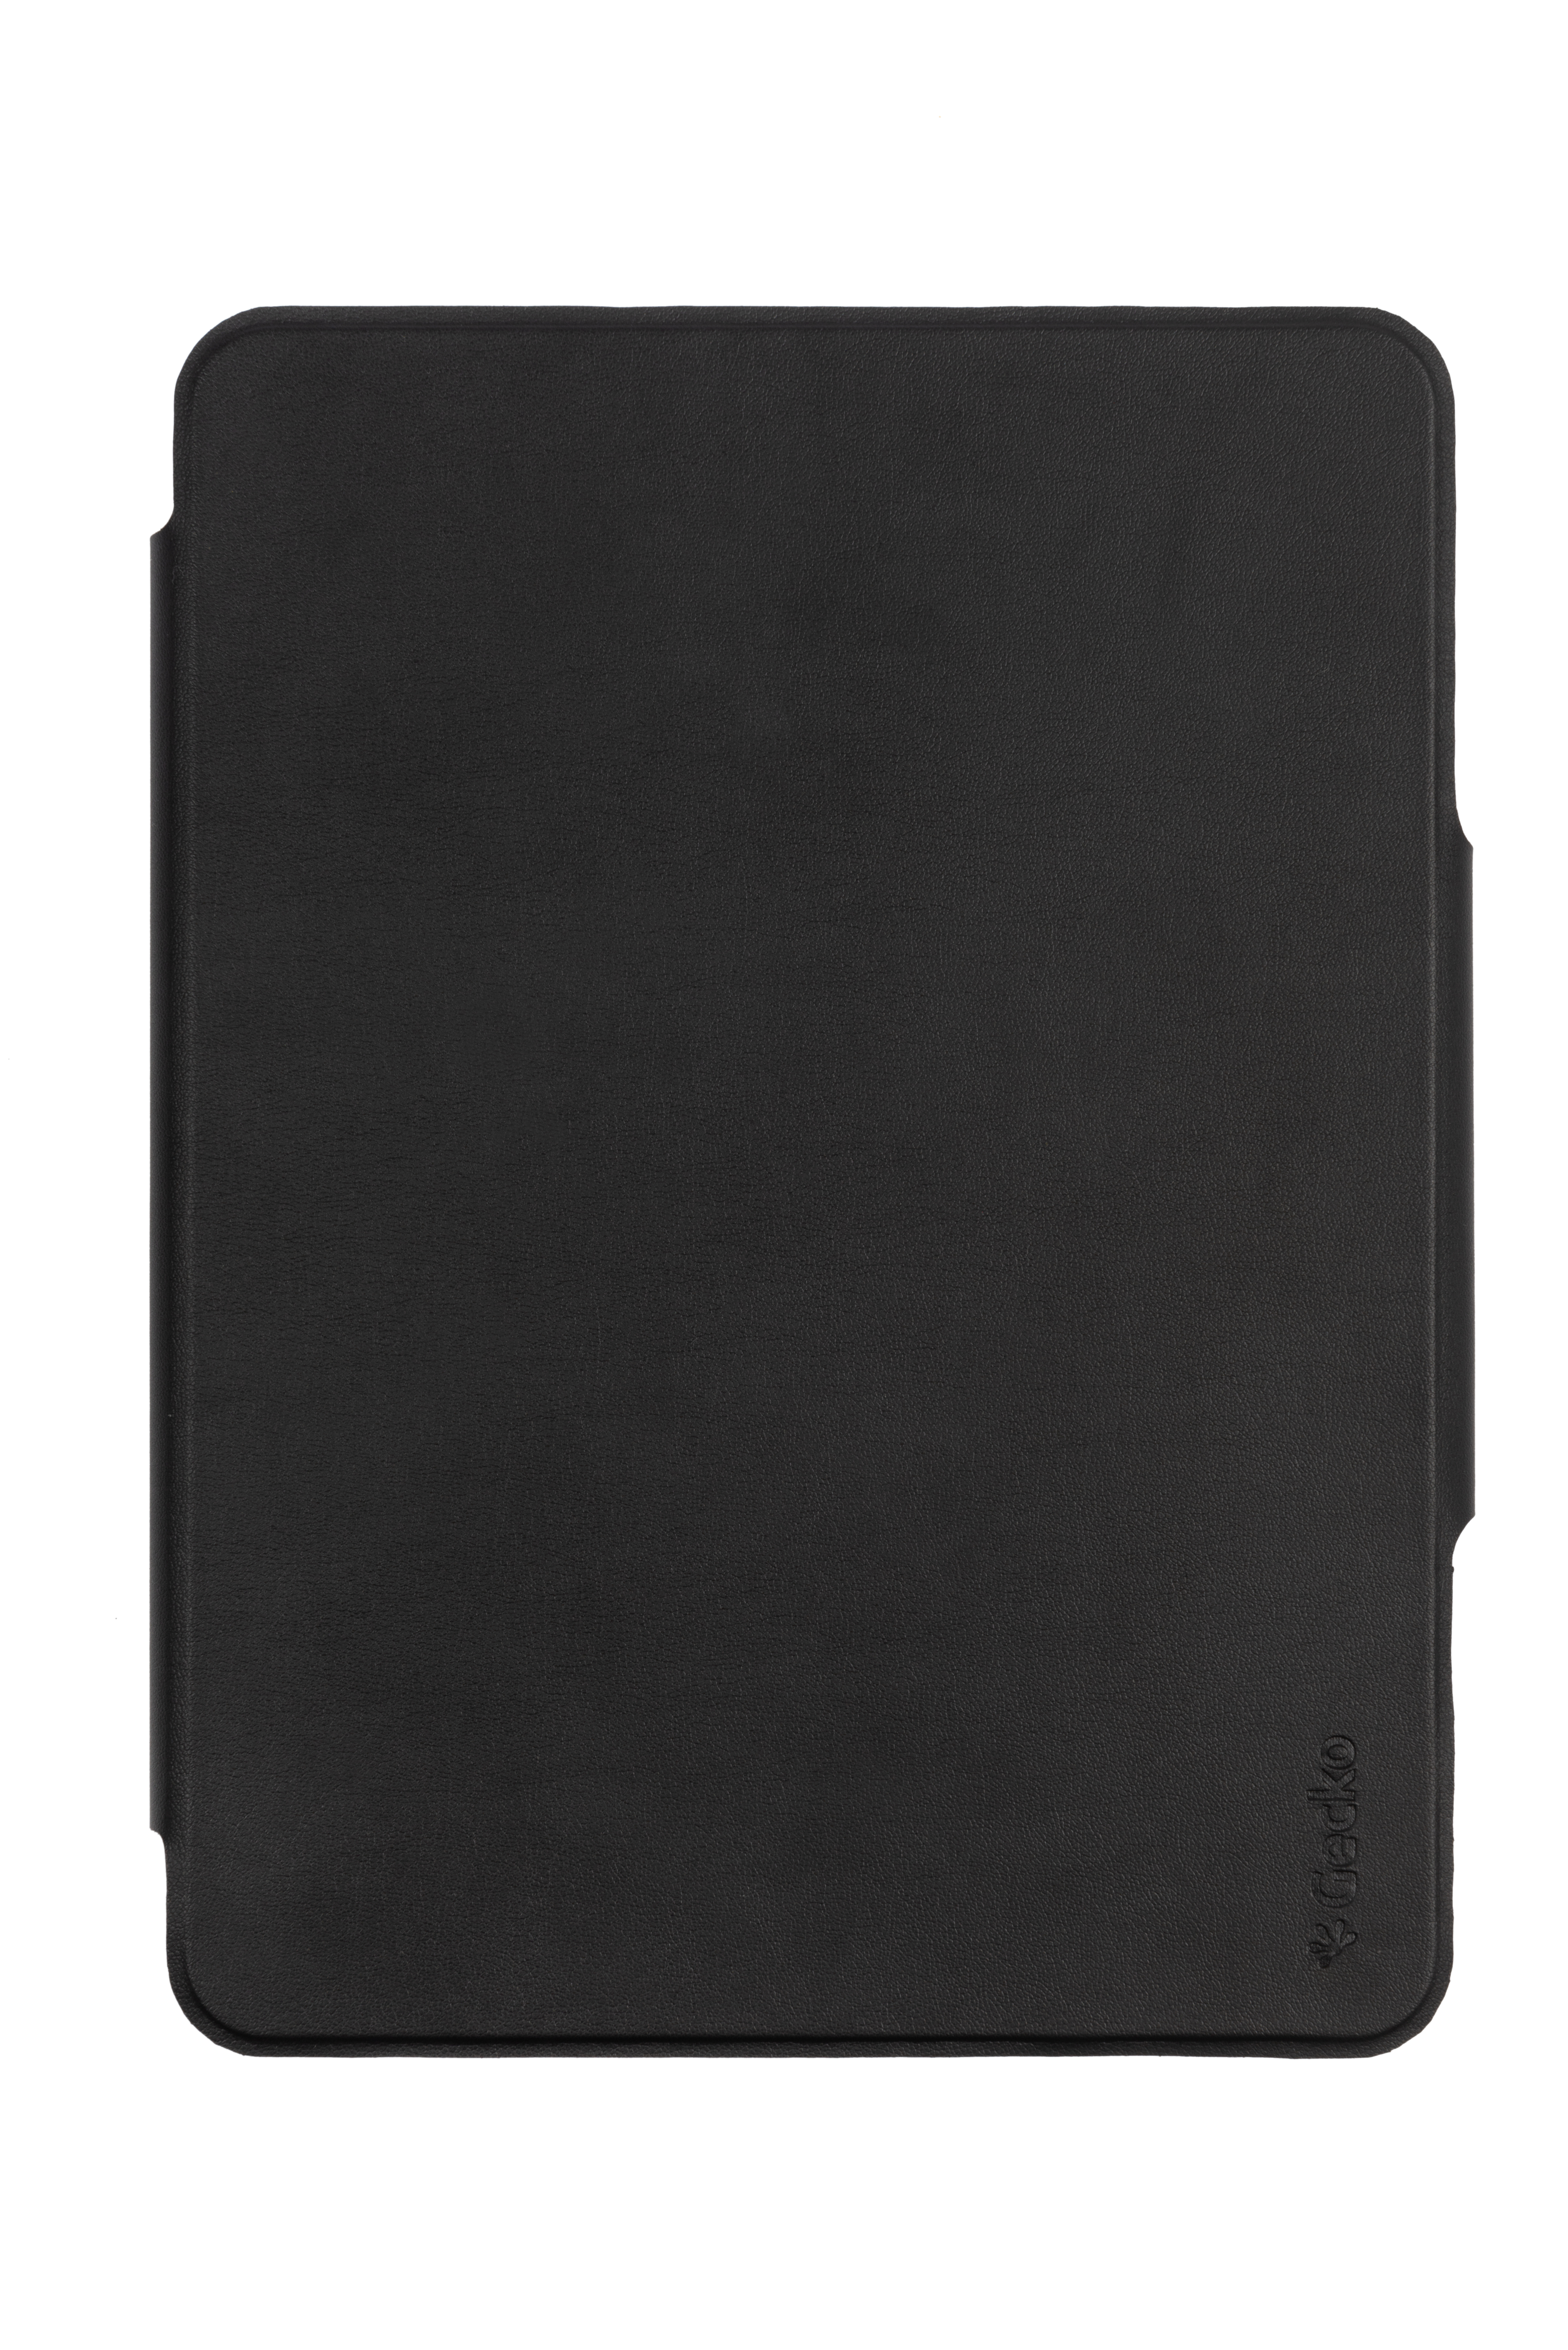 GECKO COVERS QWERTZ Tastatur-Case Apple Bookcover PU Leather, Schwarz für